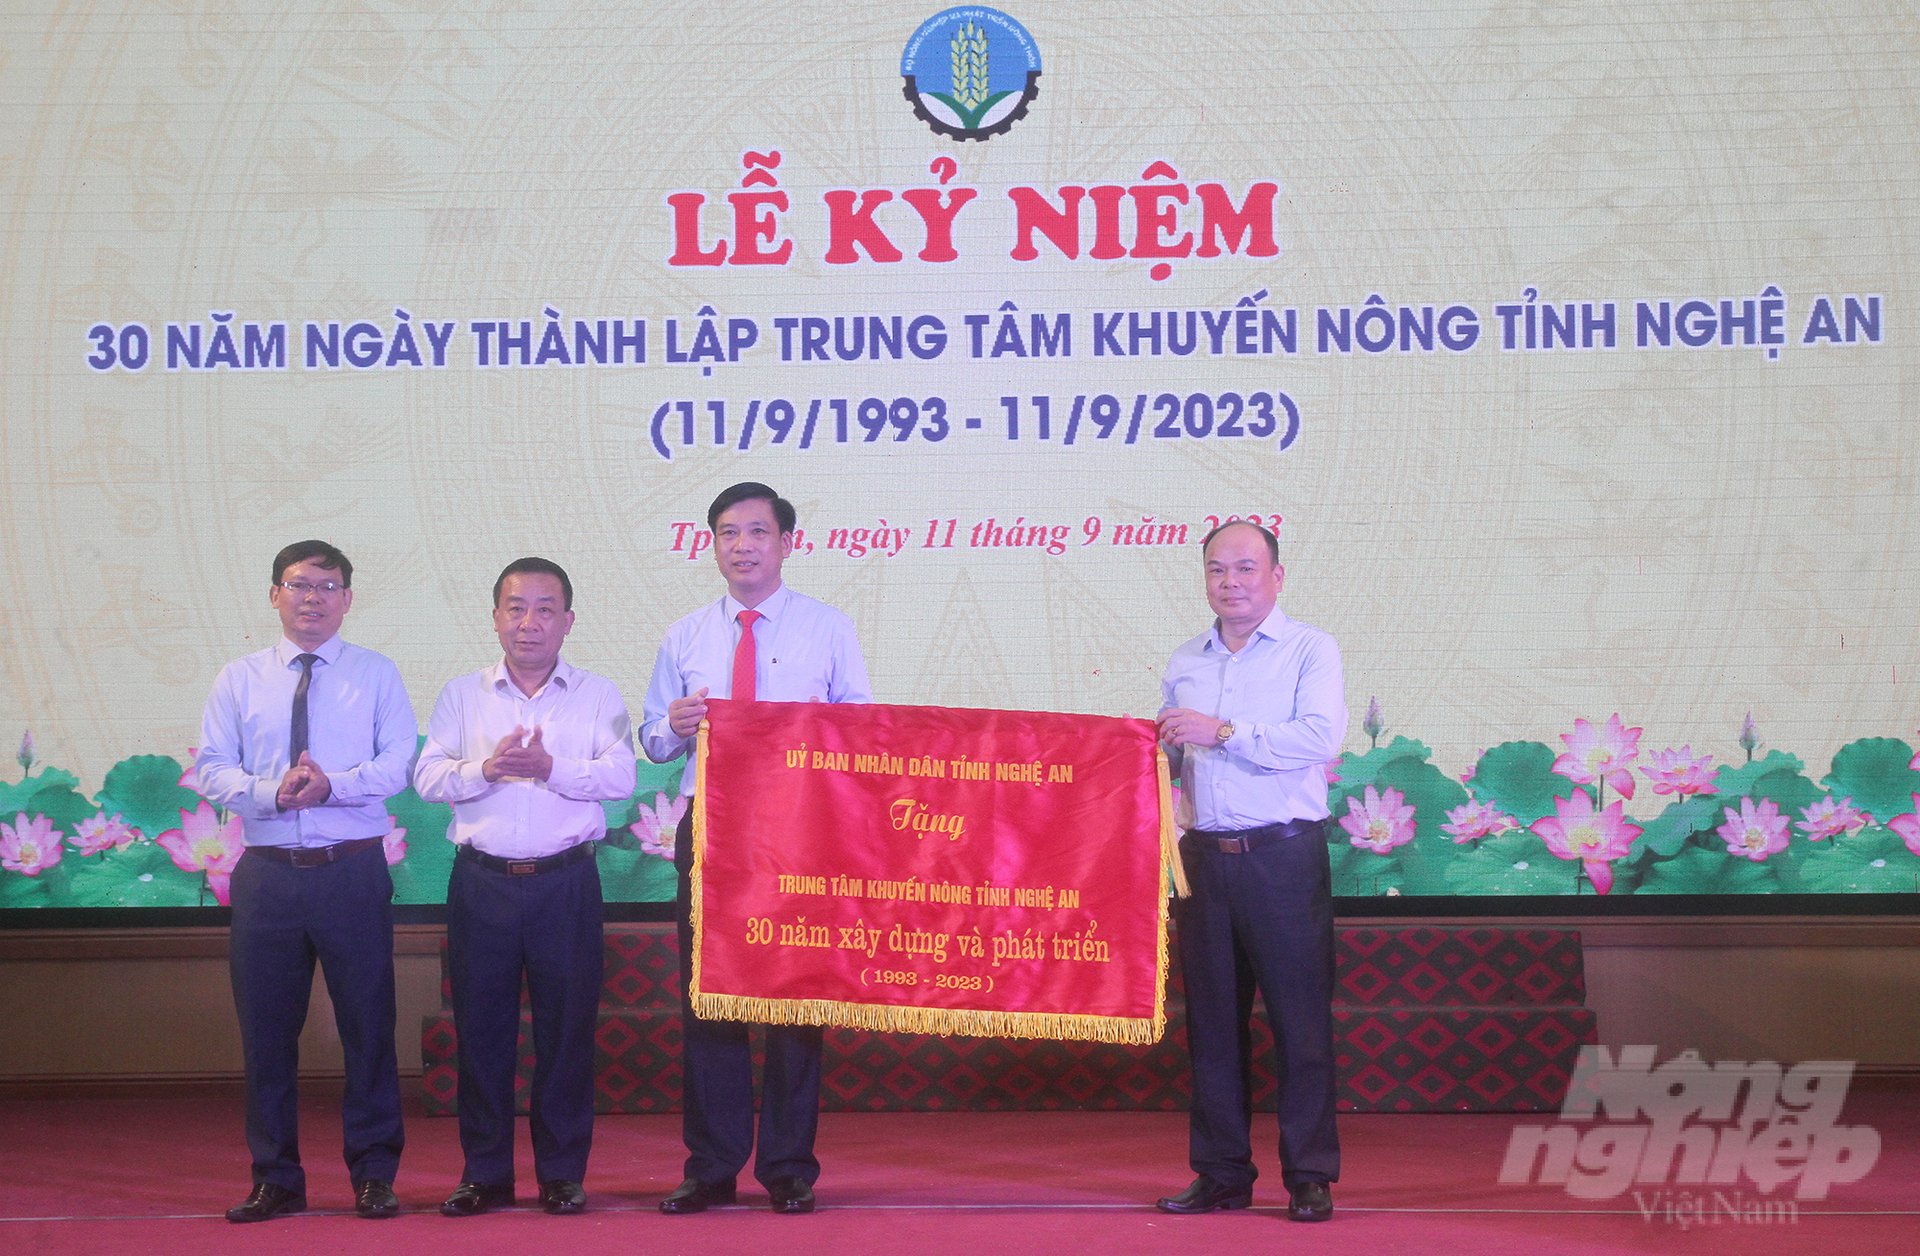 UBND tỉnh Nghệ An vinh danh Trung tâm Khuyến nông tỉnh đã có thành tích xuất sắc trong 30 năm xây dựng và phát triển. Ảnh: Việt Khánh.